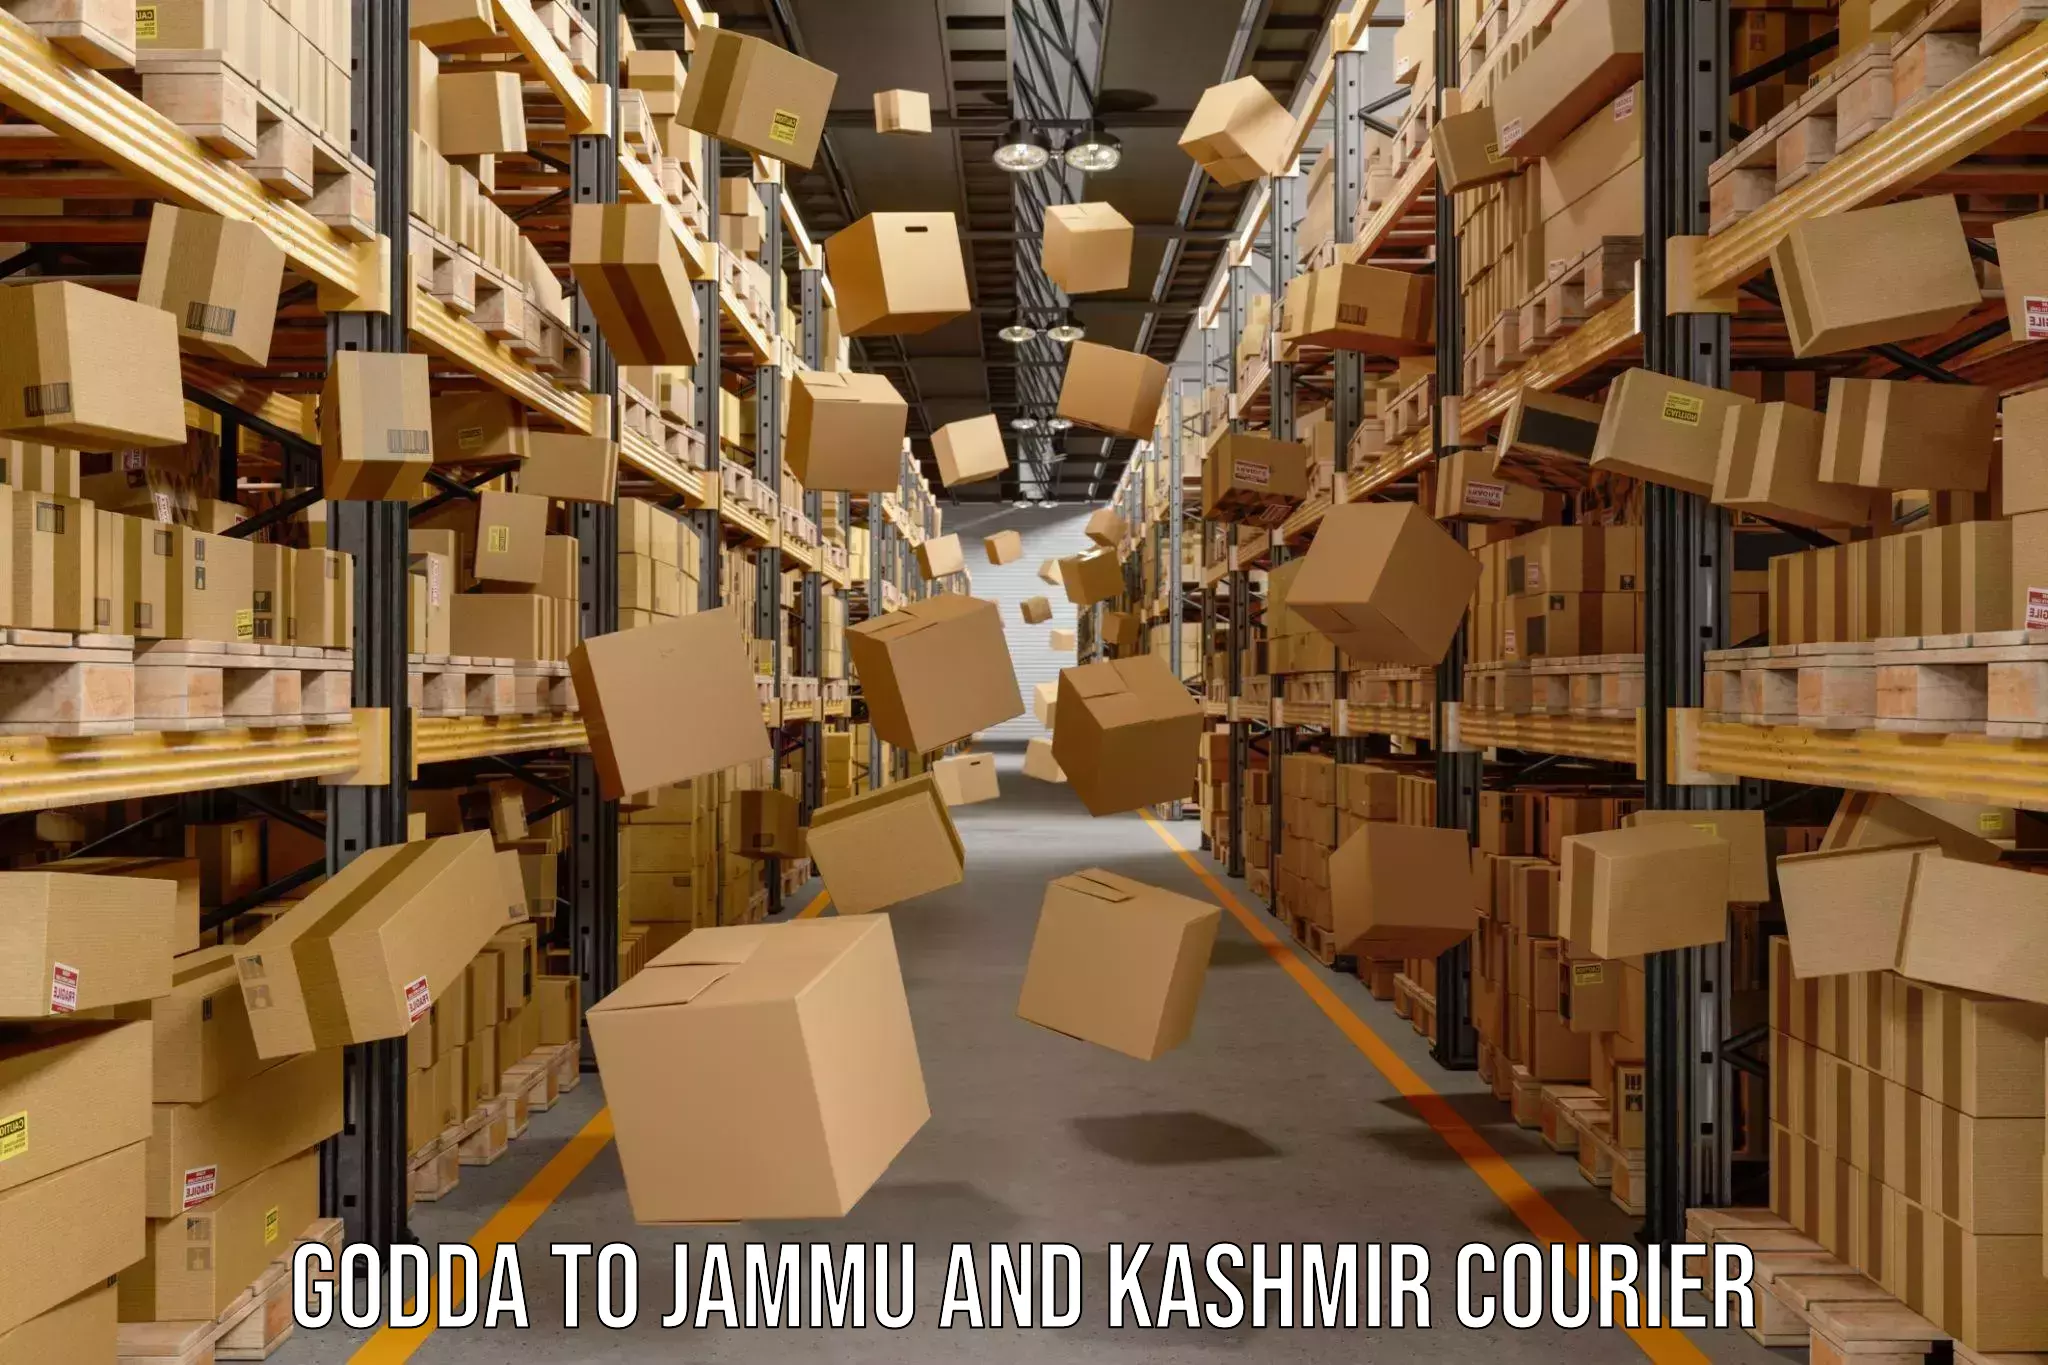 Courier service partnerships Godda to Srinagar Kashmir